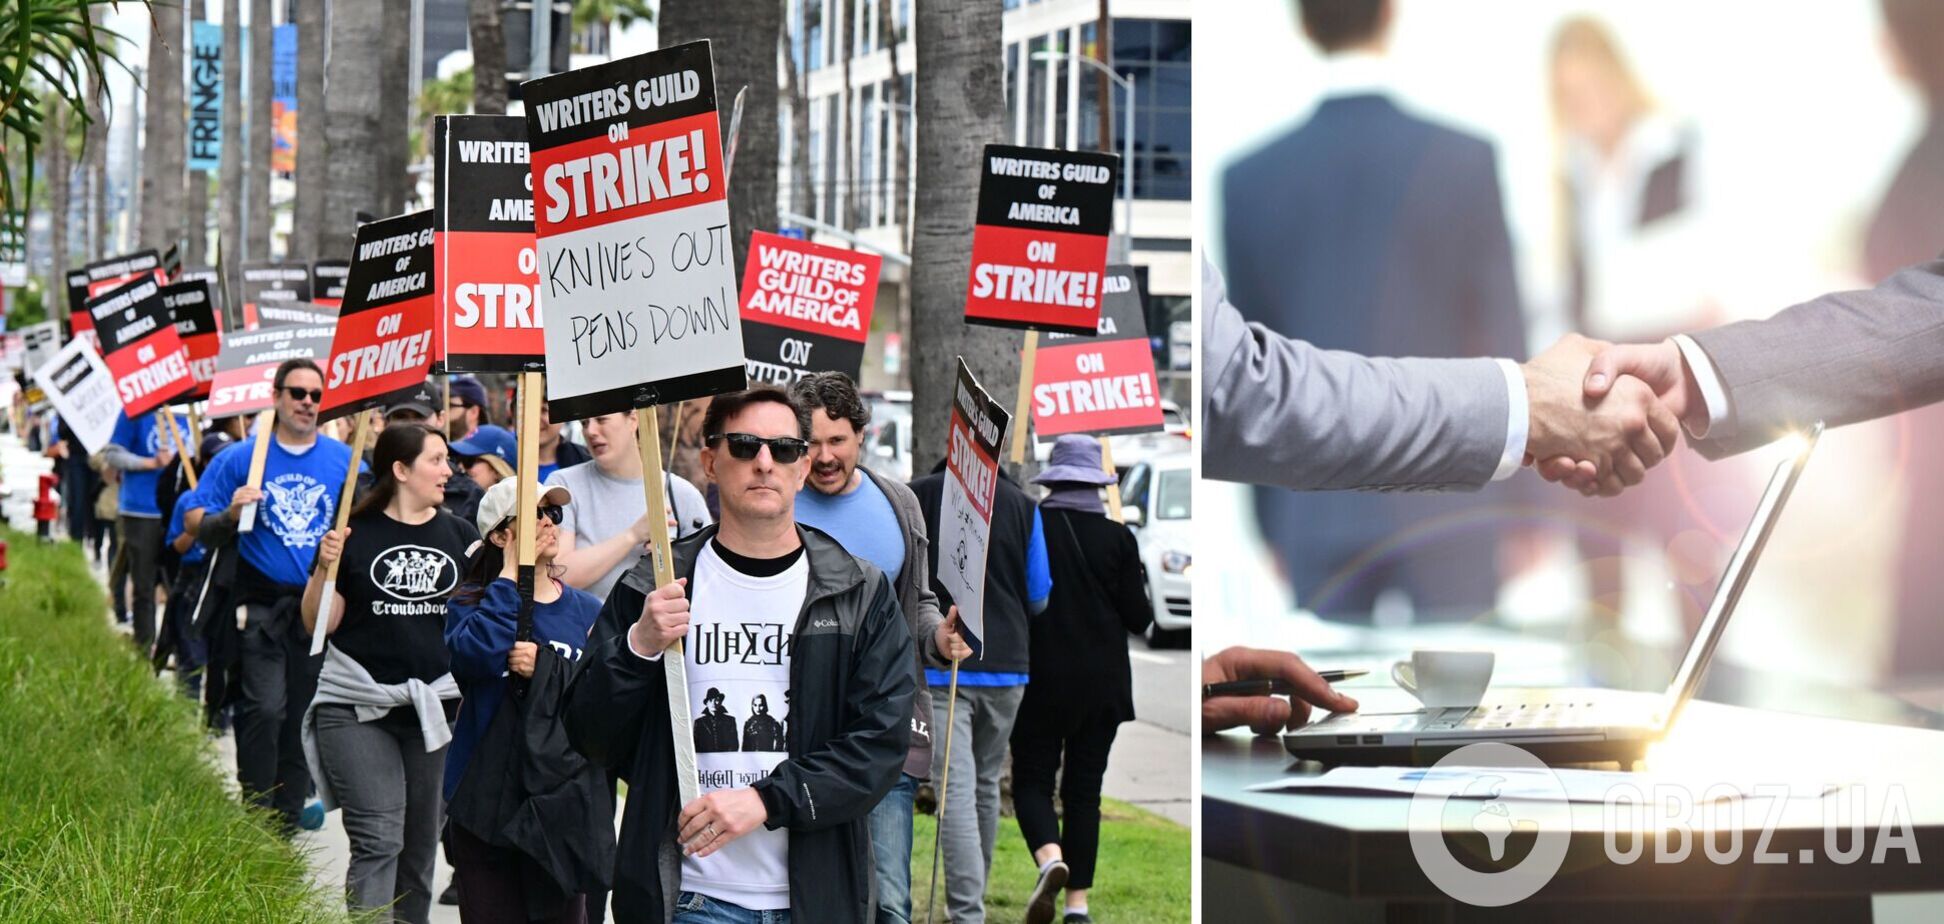 Гильдия сценаристов Америки объявила о прекращении забастовки, которая длилась 148 дней. Что они требовали